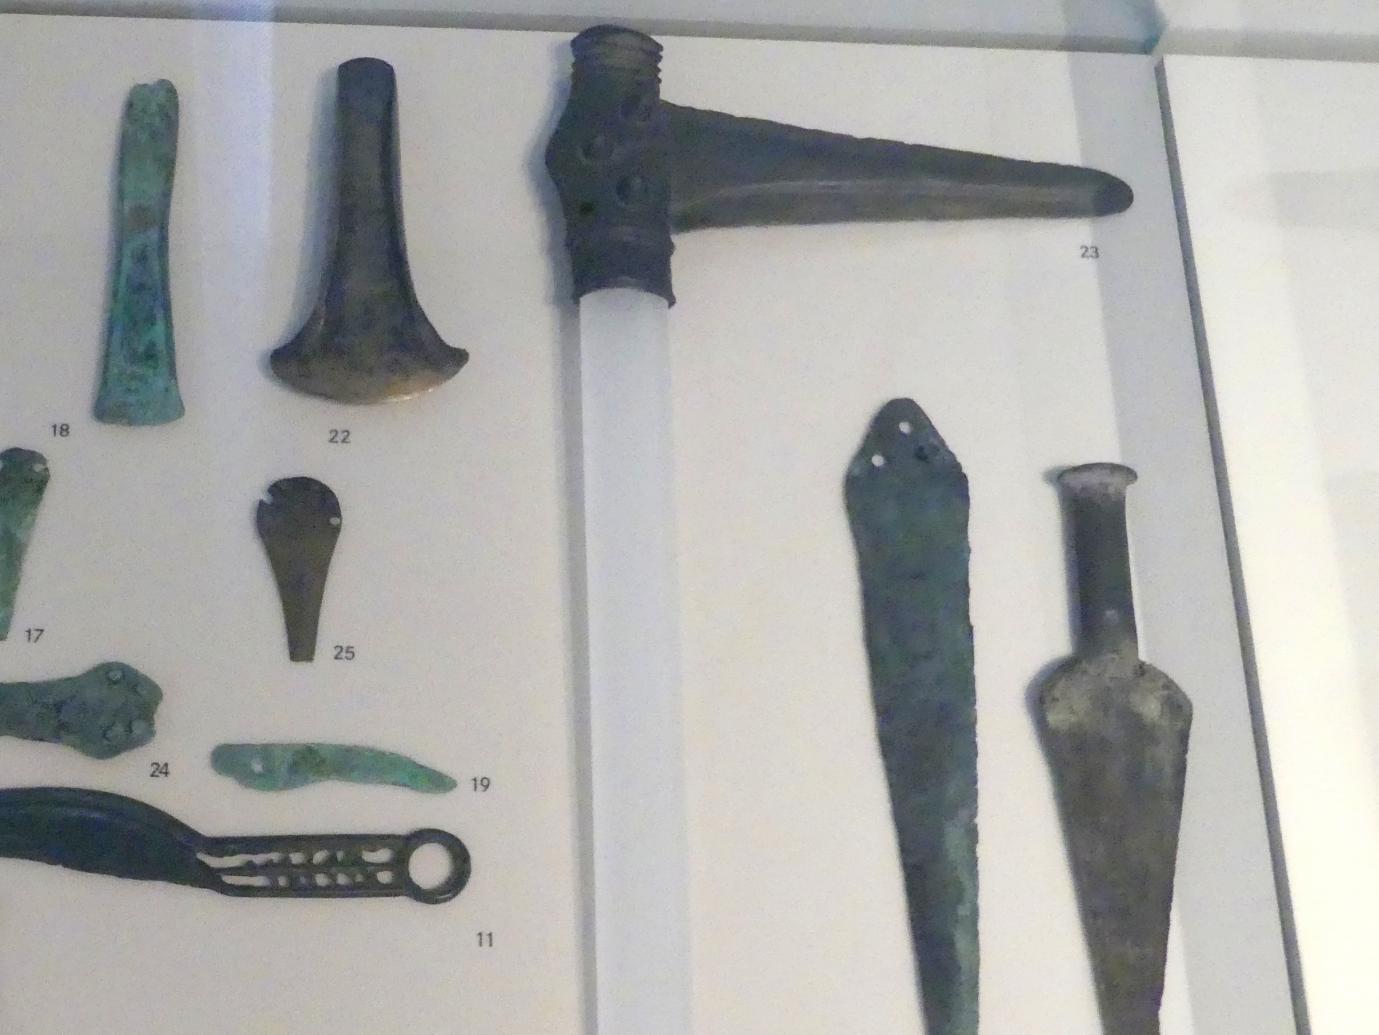 Stabdolch, Frühe Bronzezeit, 3365 - 1200 v. Chr., 1800 - 1600 v. Chr.